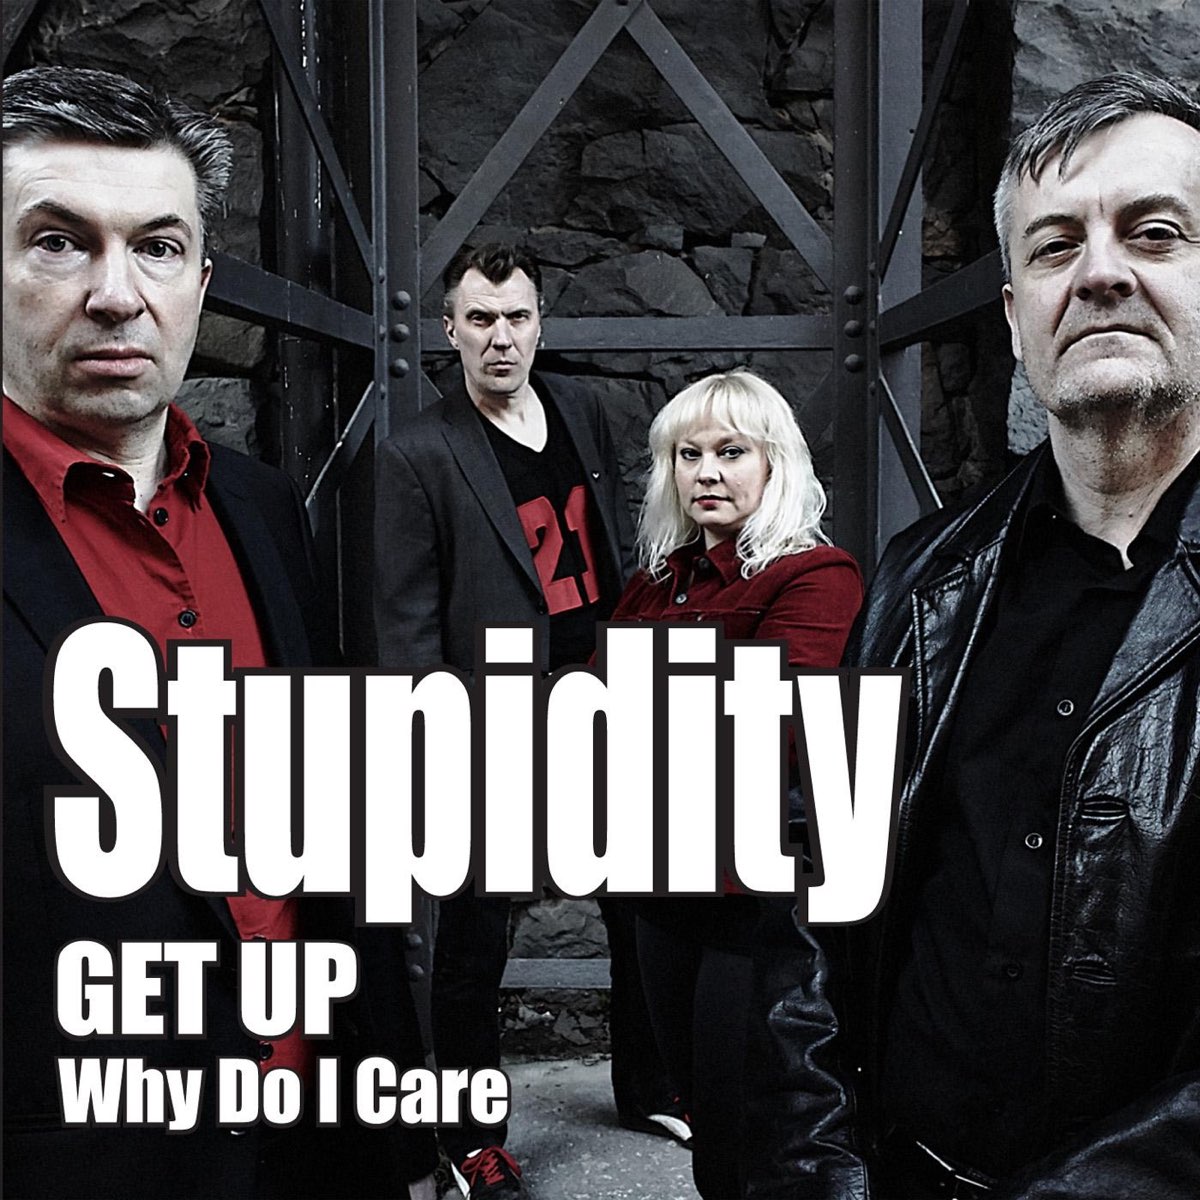 Stupid feat. Stupid Music. Next year i'll up my stupidity Level.